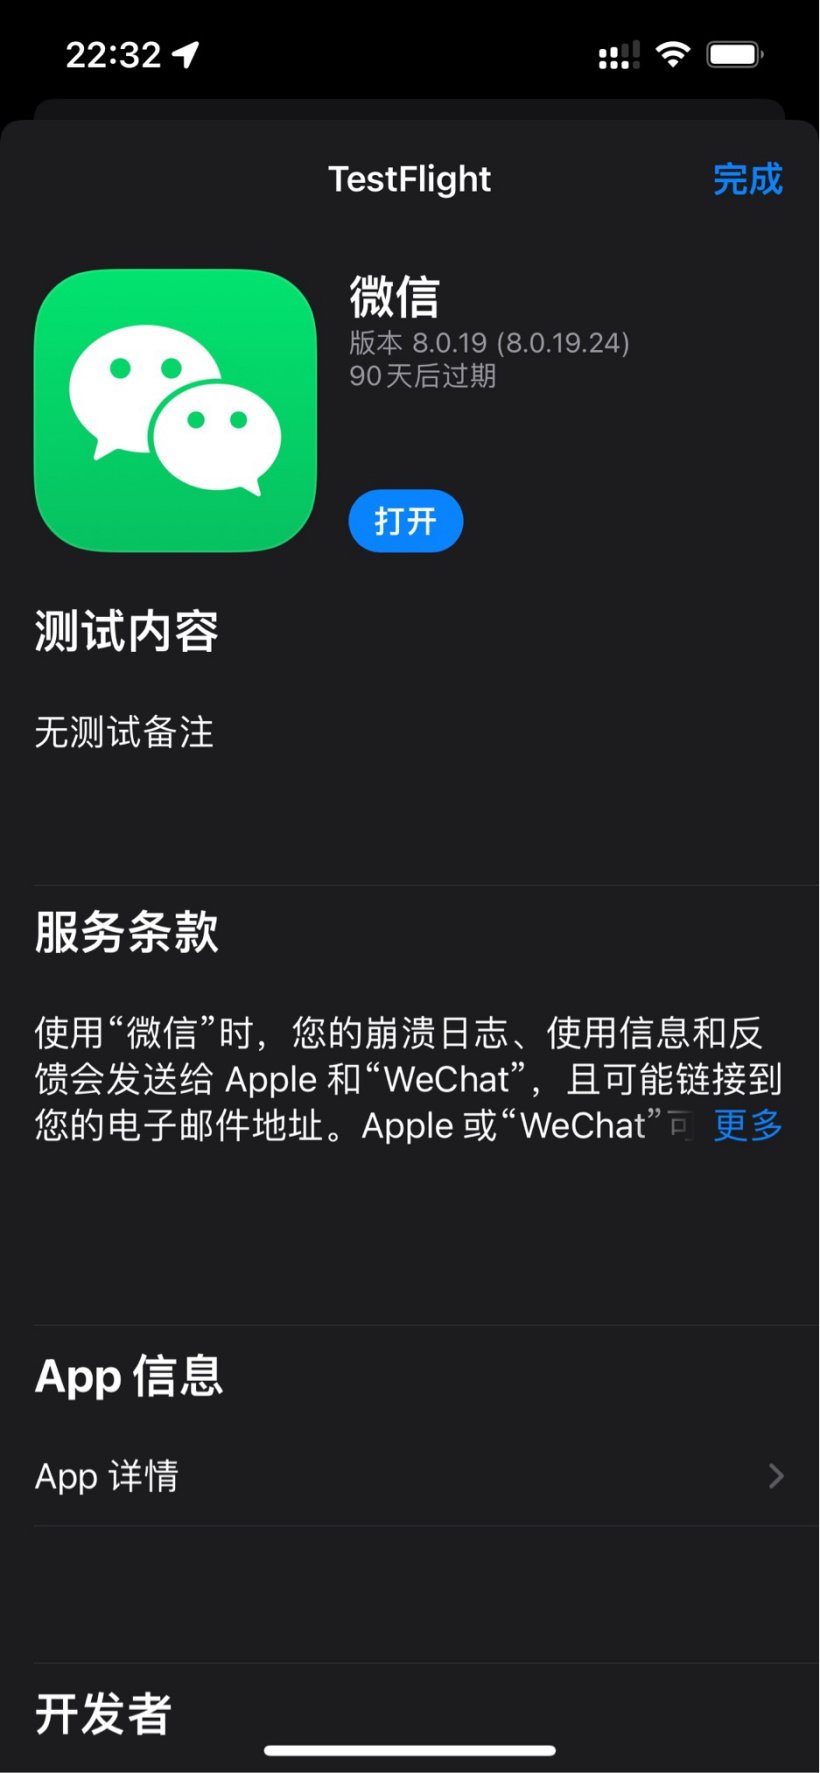 微信發布 iOS 版 8.0.19 內測版更新